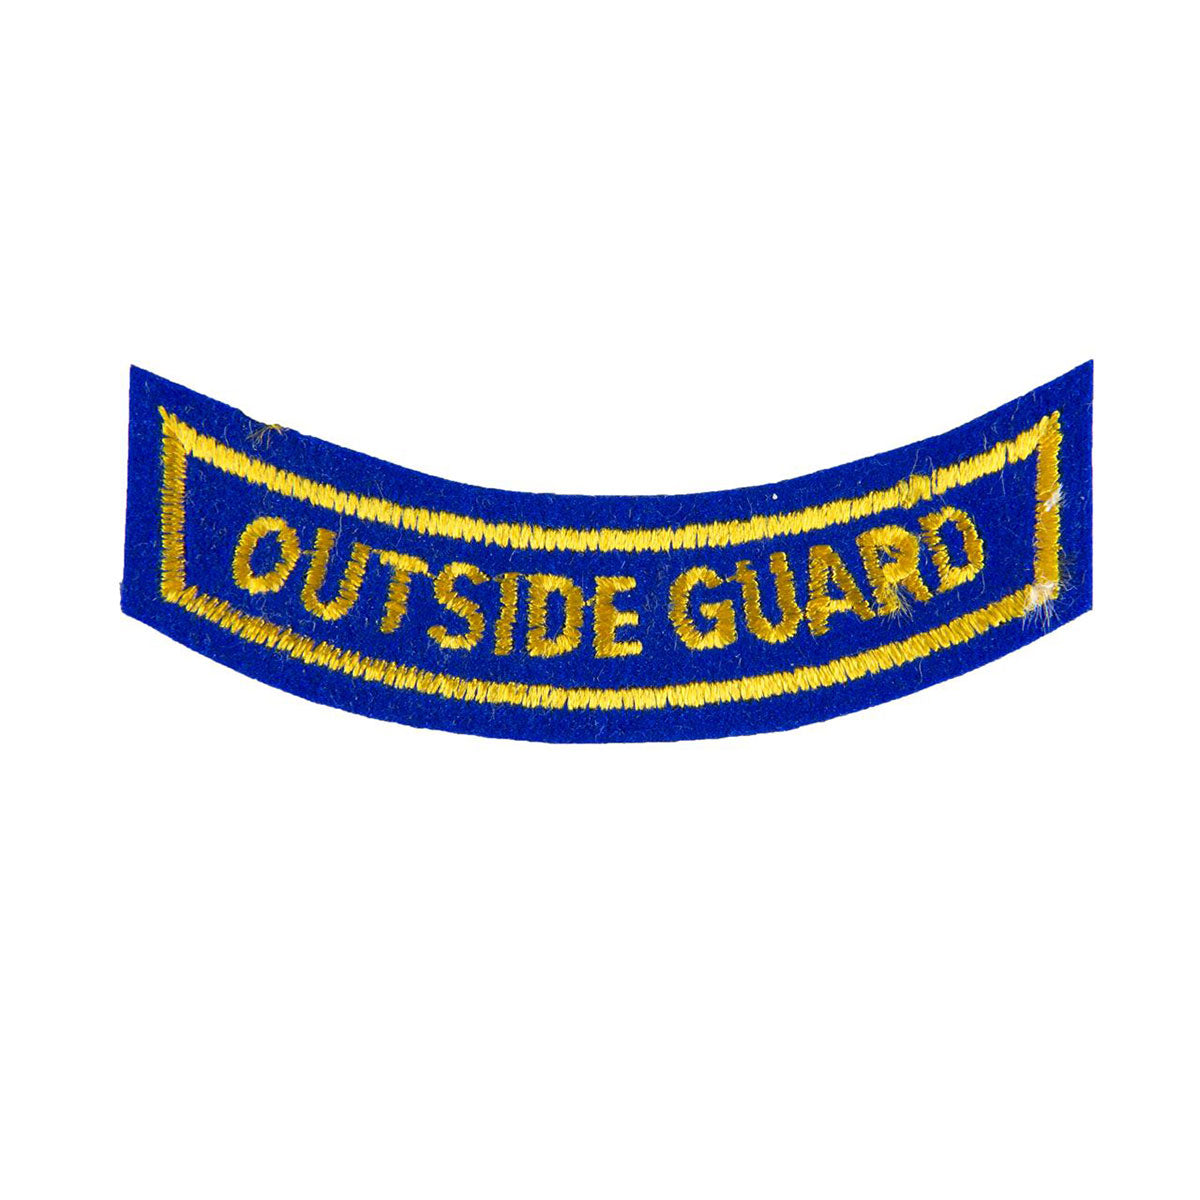 Outside Guard Rocker